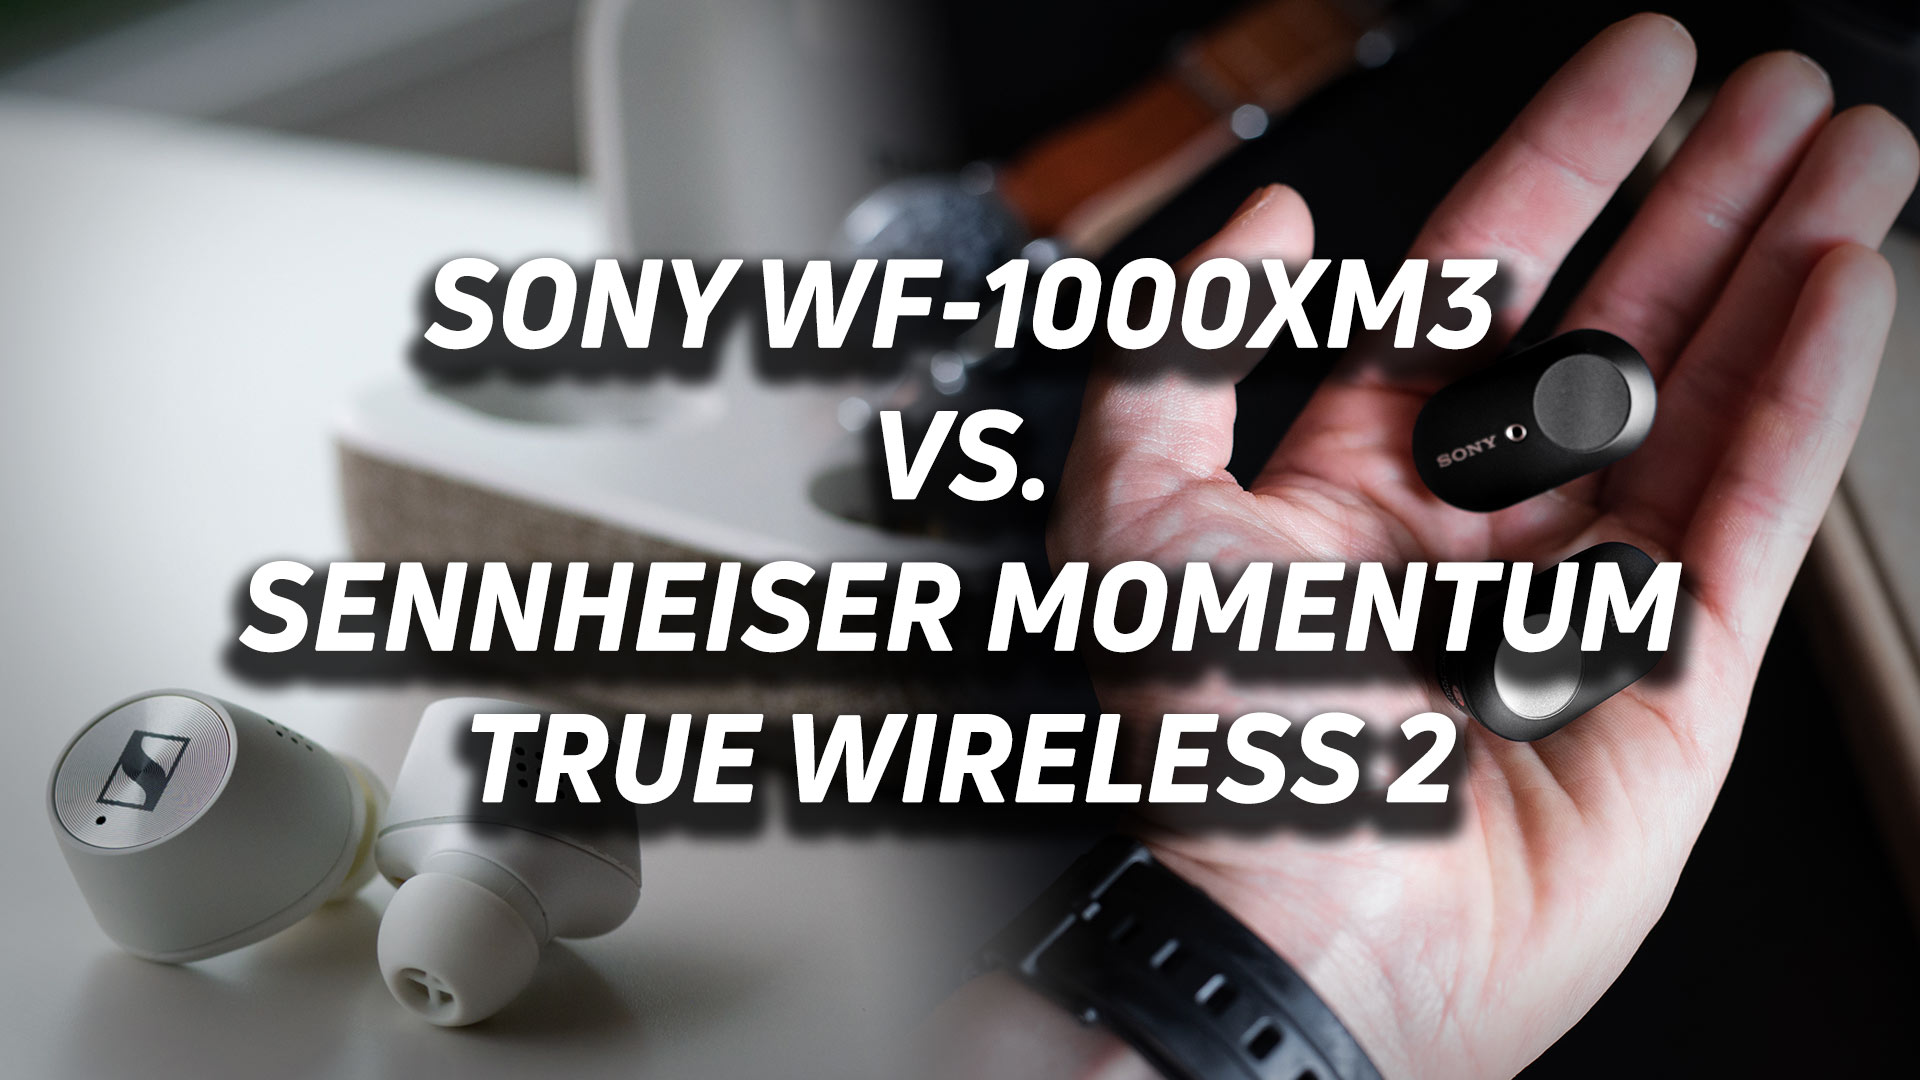 WF-1000XM3 Specifications, Truly Wireless